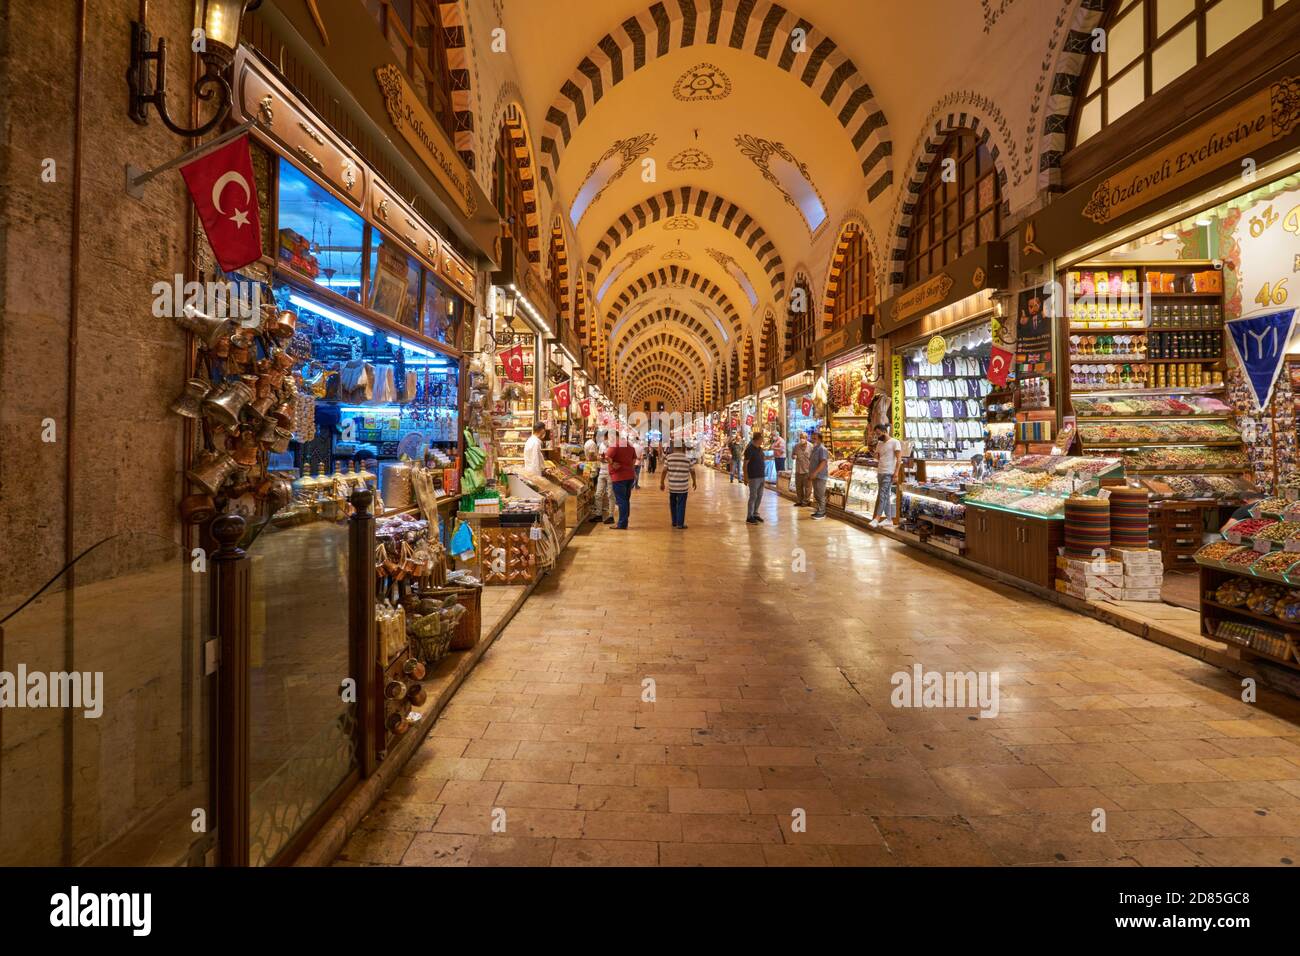 Passages et boutiques dans le marché égyptien des épices, Istanbul, Turquie Banque D'Images